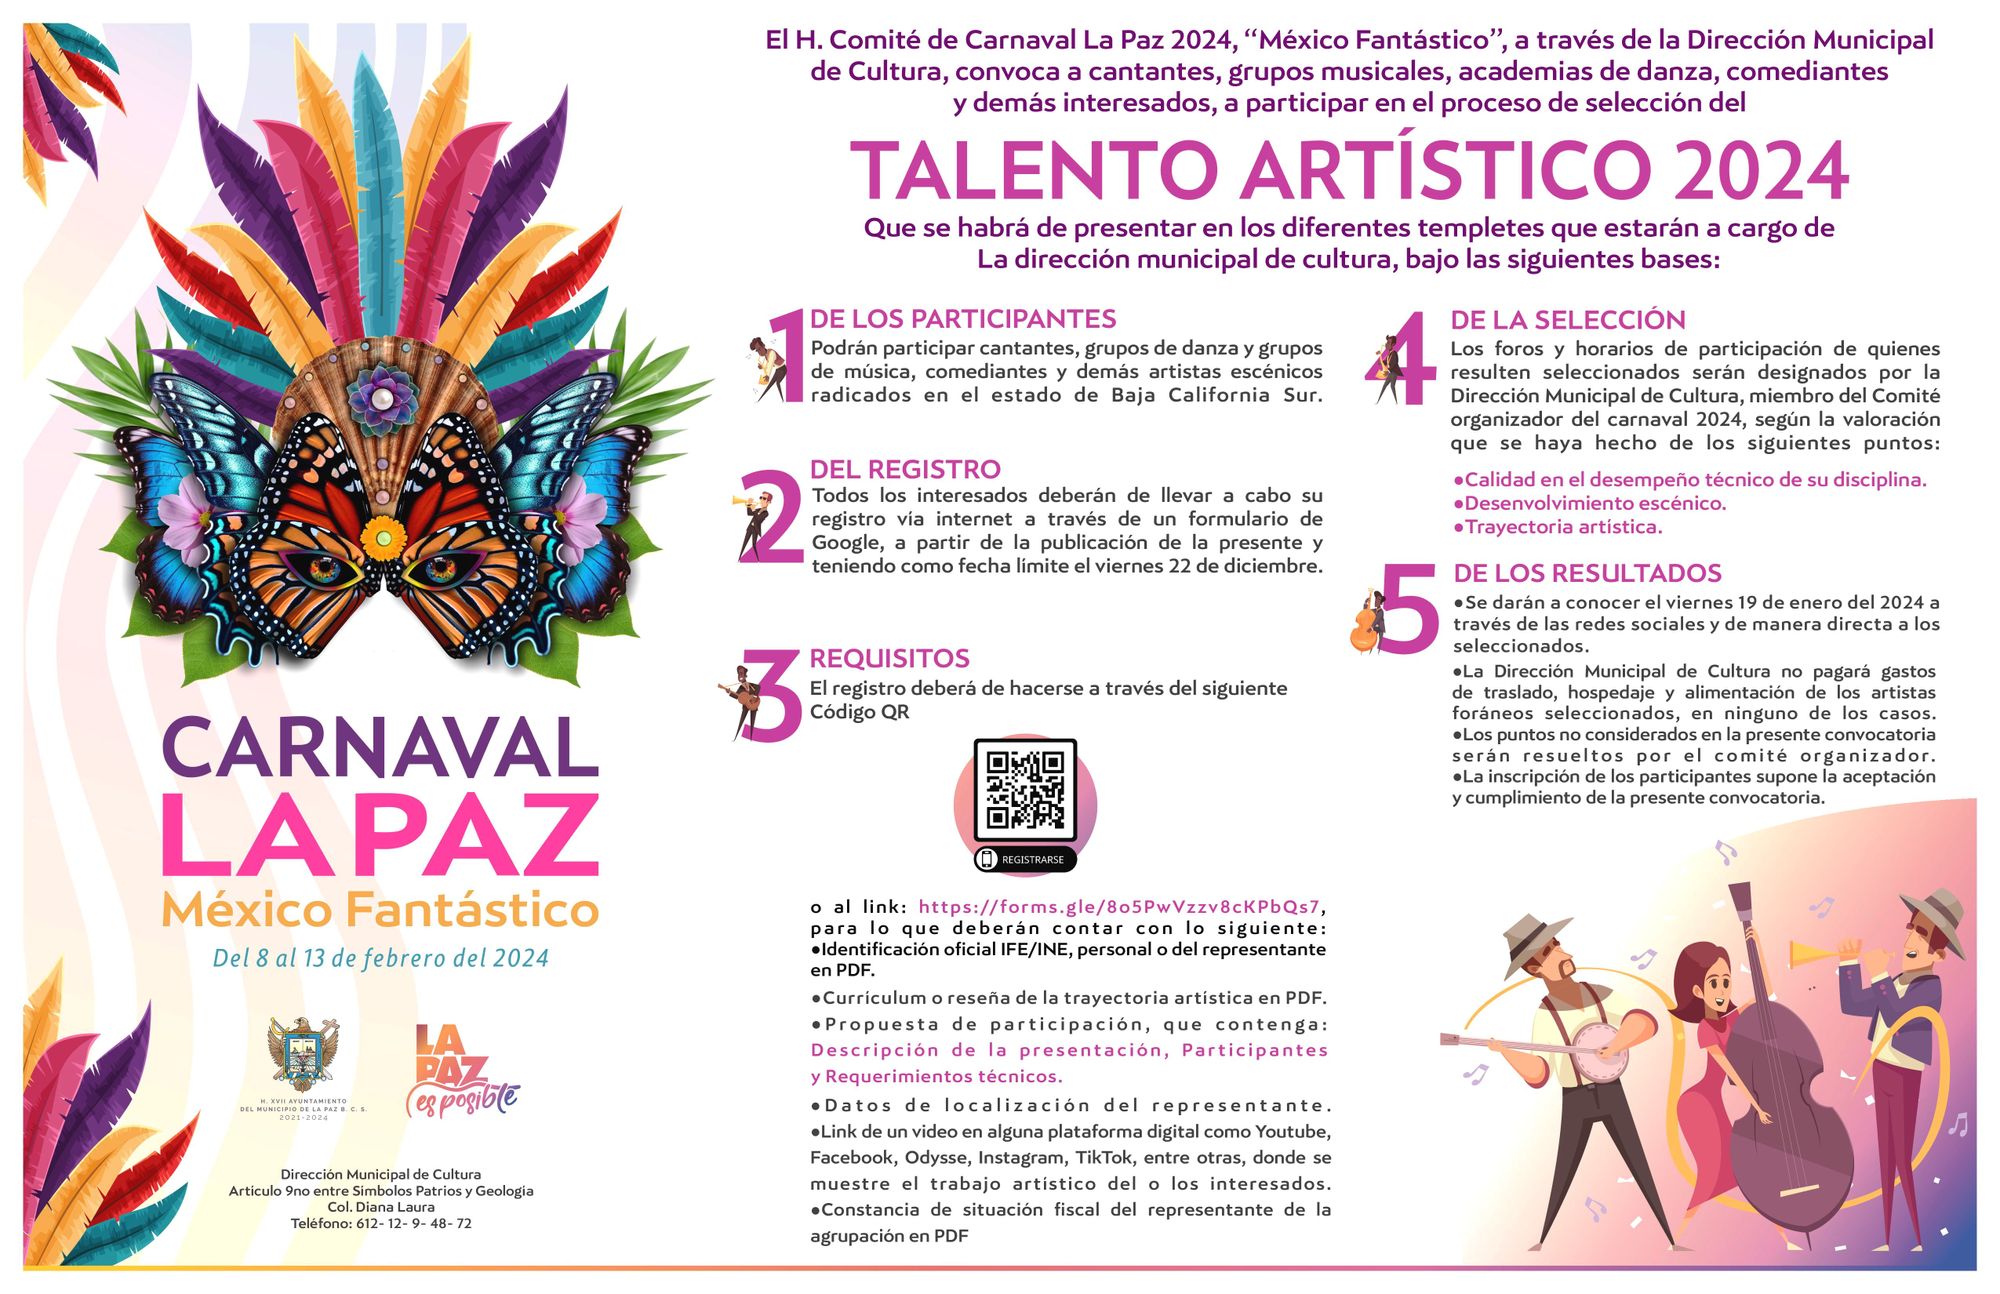 Continúa abierta convocatoria a los artistas locales para participar en el Carnaval 2024